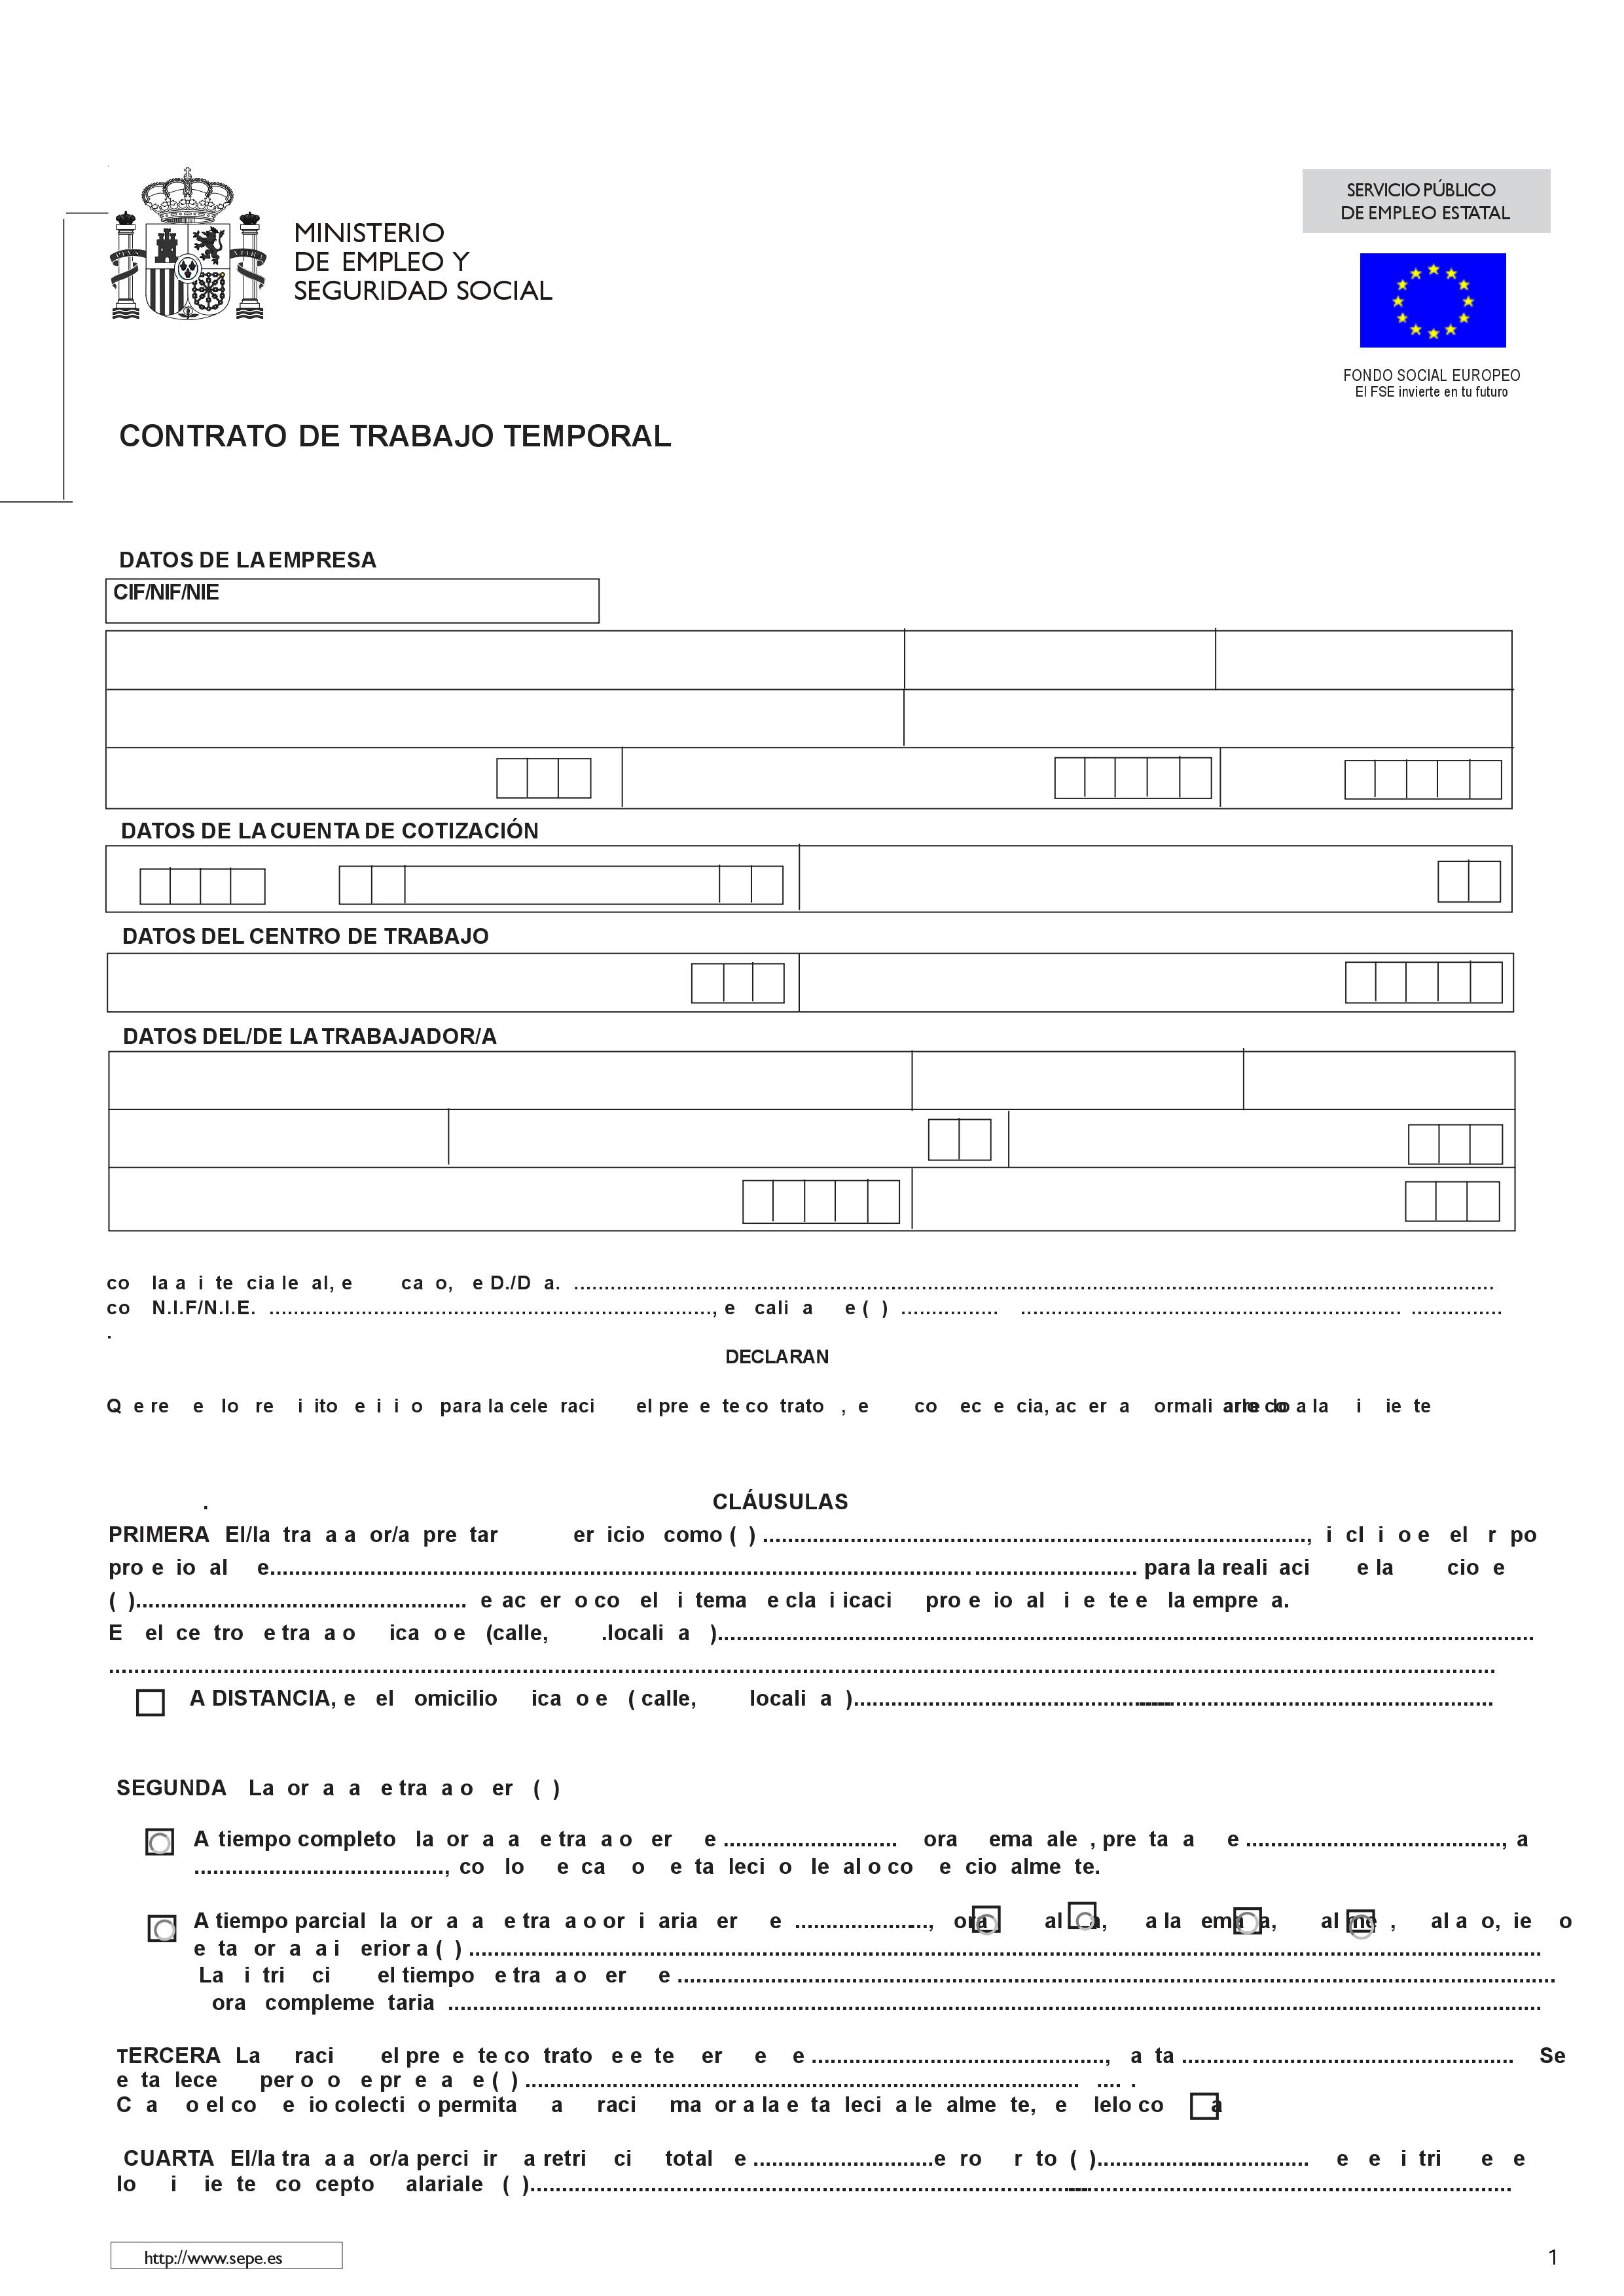 Contrato De Trabajo Temporal Espana Modelos De Contratos De Trabajo